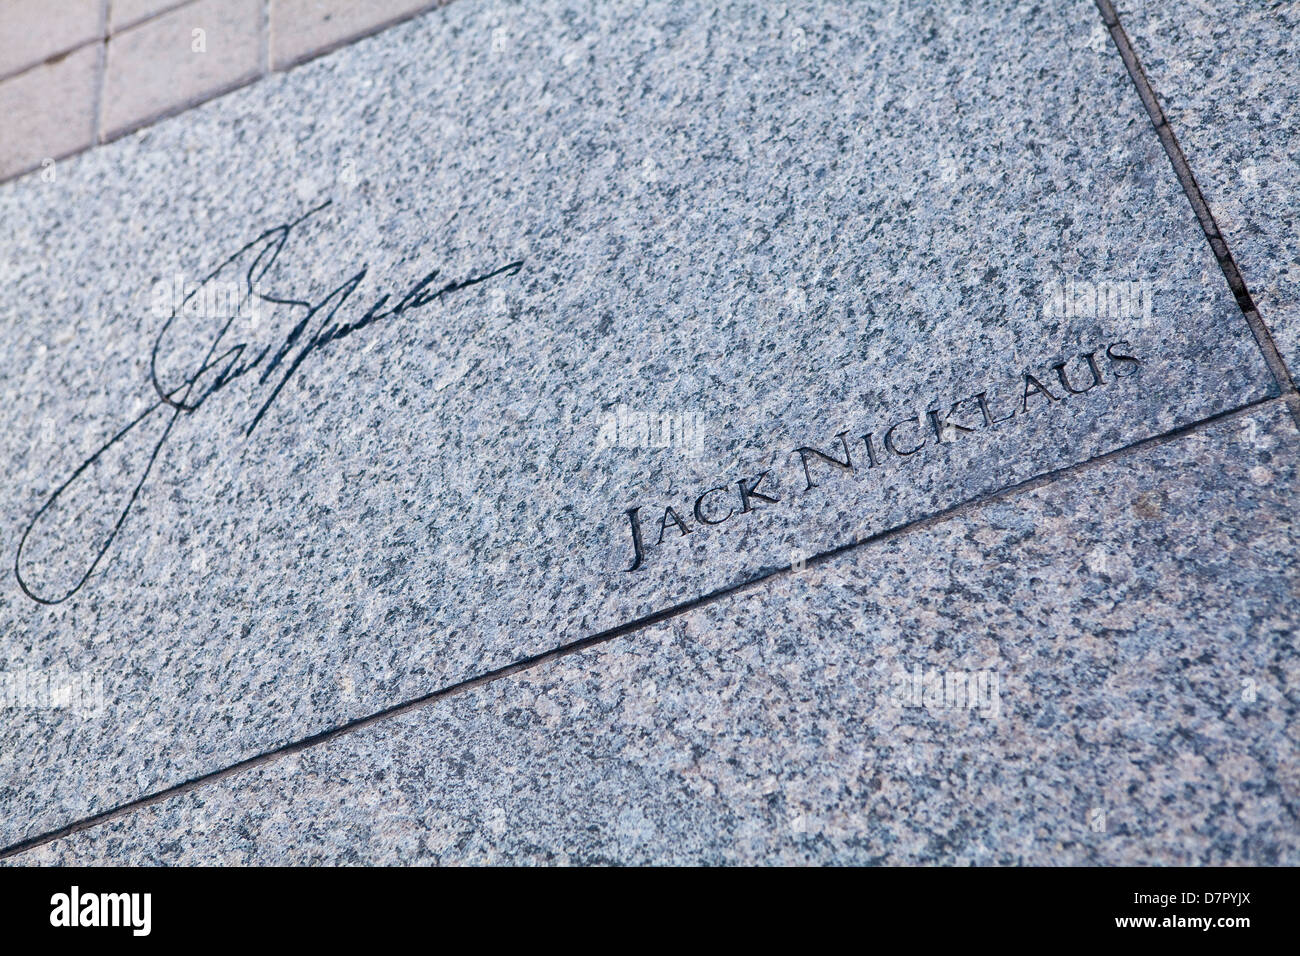 Jack Nicklause autografo è visto scolpito su una ardesia presso il World Golf Hall of Fame in Sant'Agostino, Florida Foto Stock